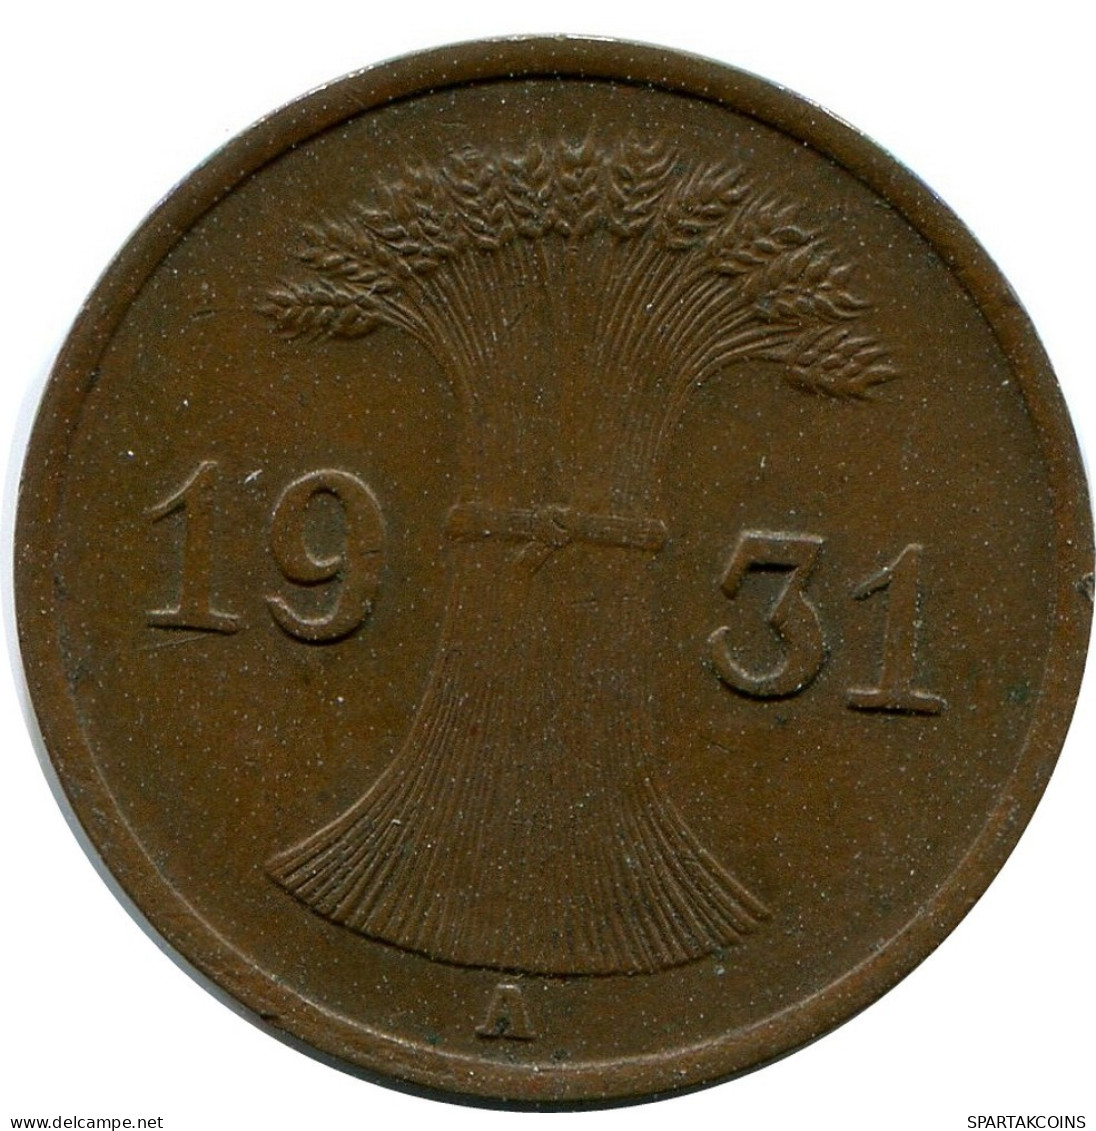 1 REICHSPFENNIG 1931 A DEUTSCHLAND Münze GERMANY #DB789.D.A - 1 Rentenpfennig & 1 Reichspfennig